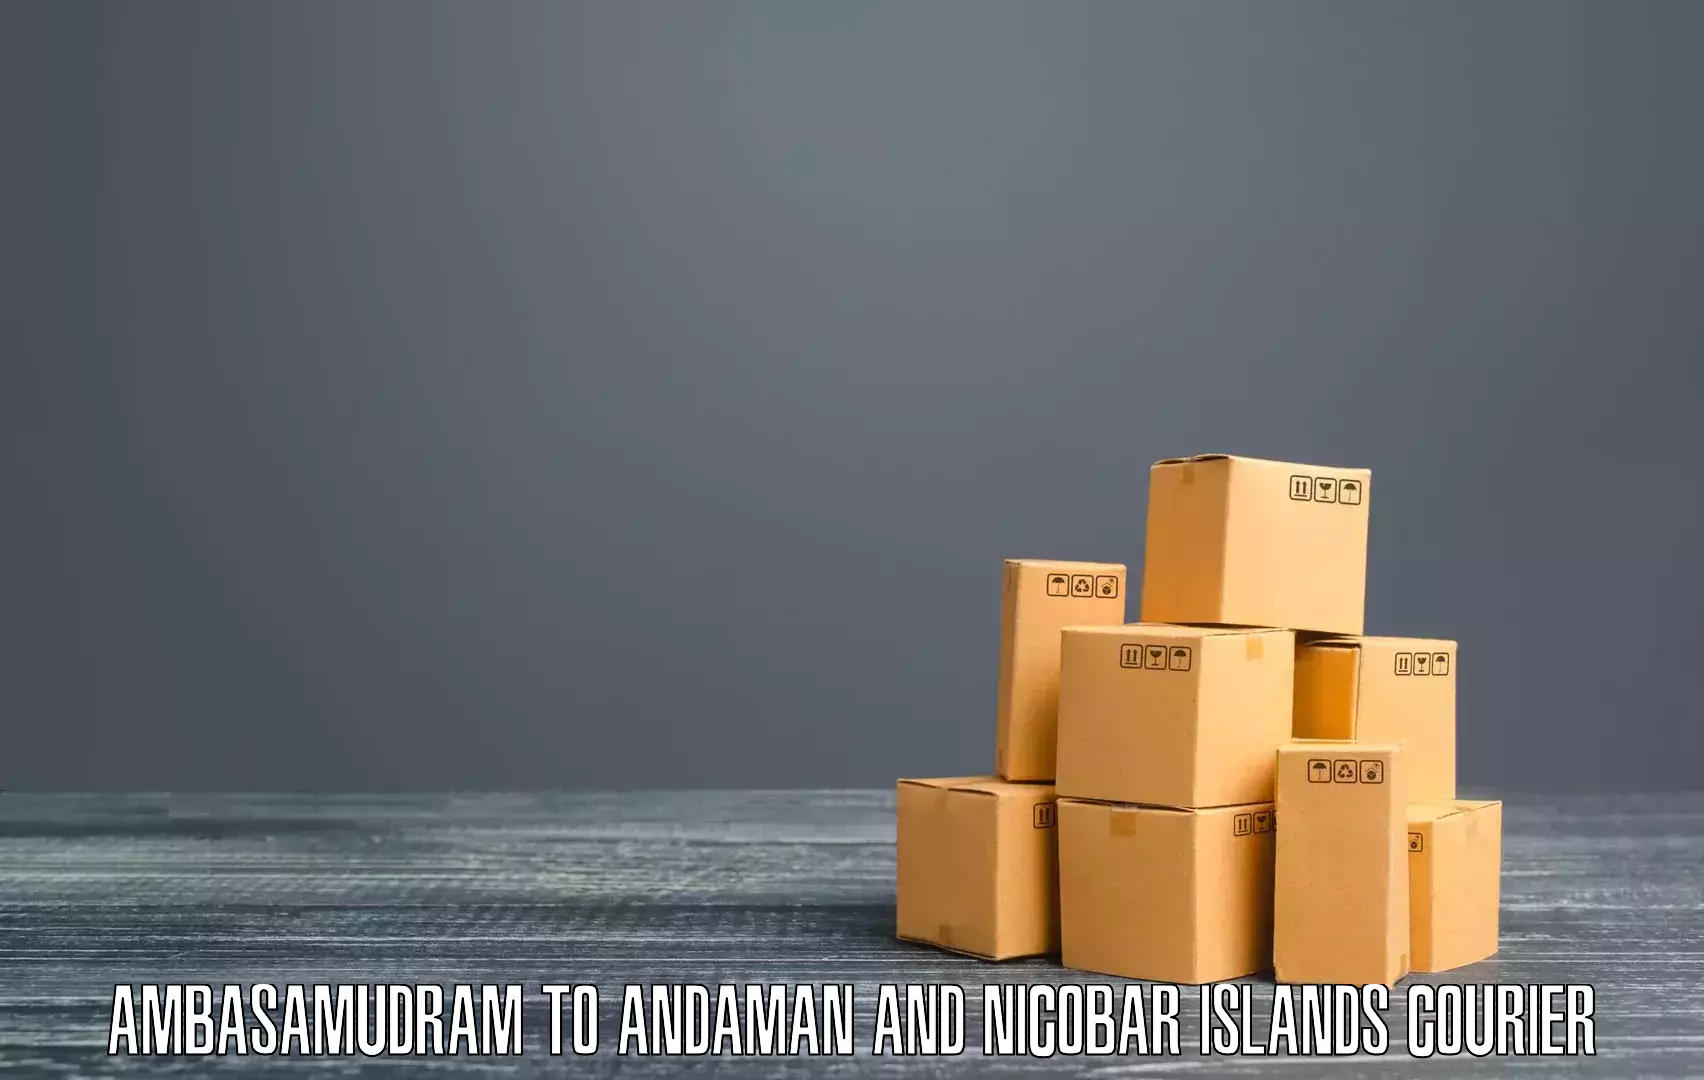 Express shipping Ambasamudram to Nicobar